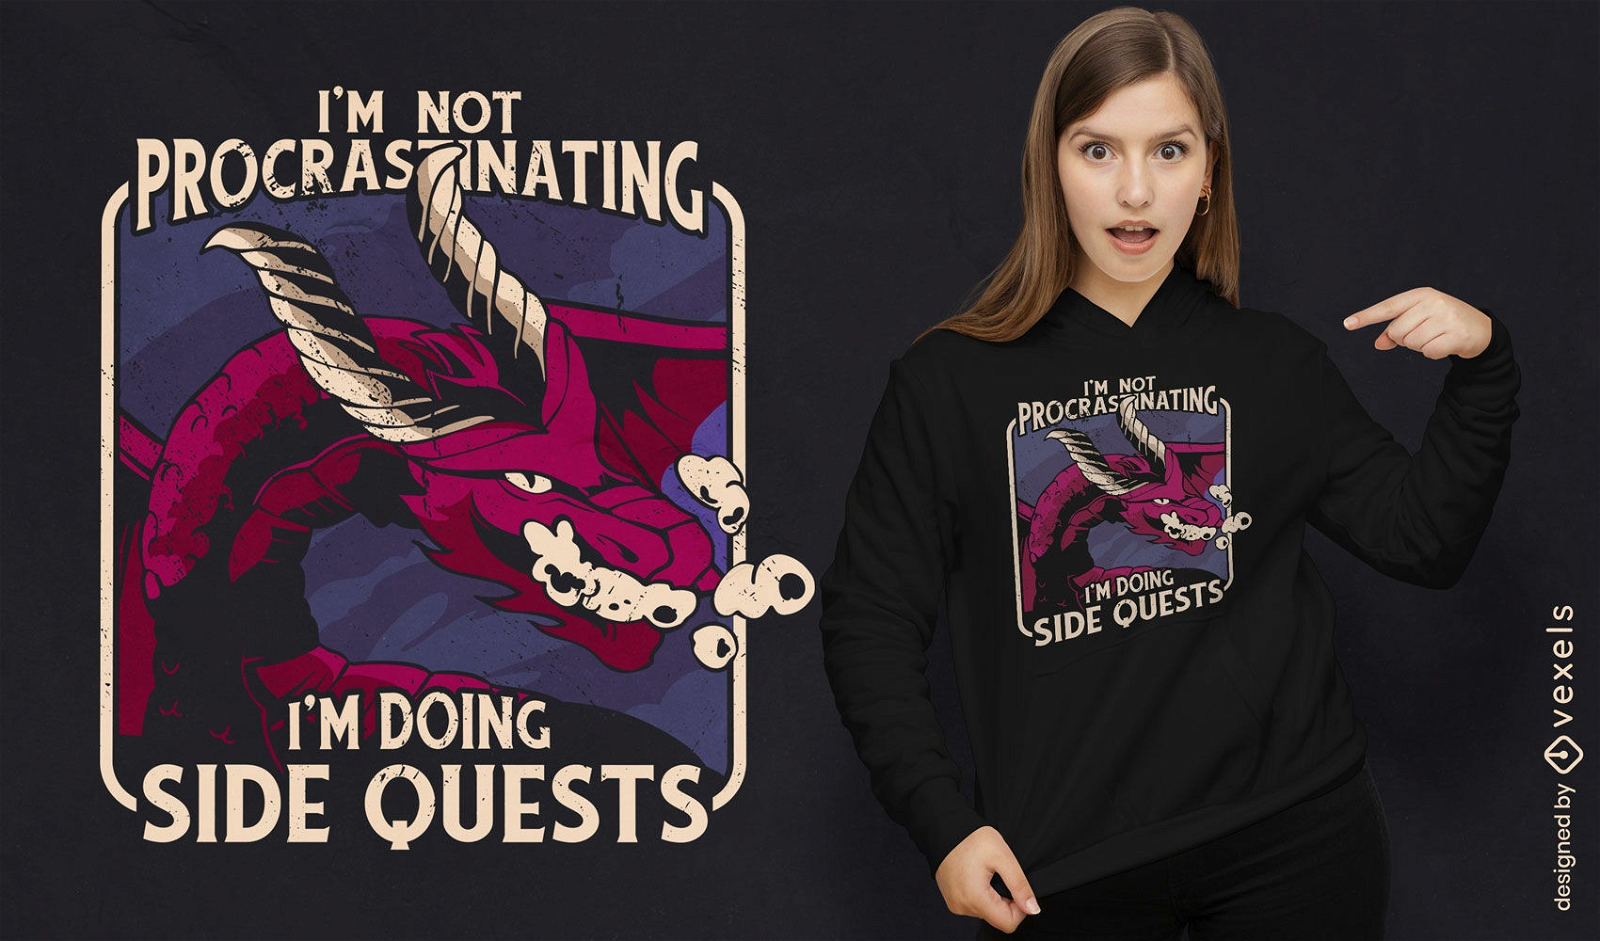 Procrastinating dragon gaming t-shirt design